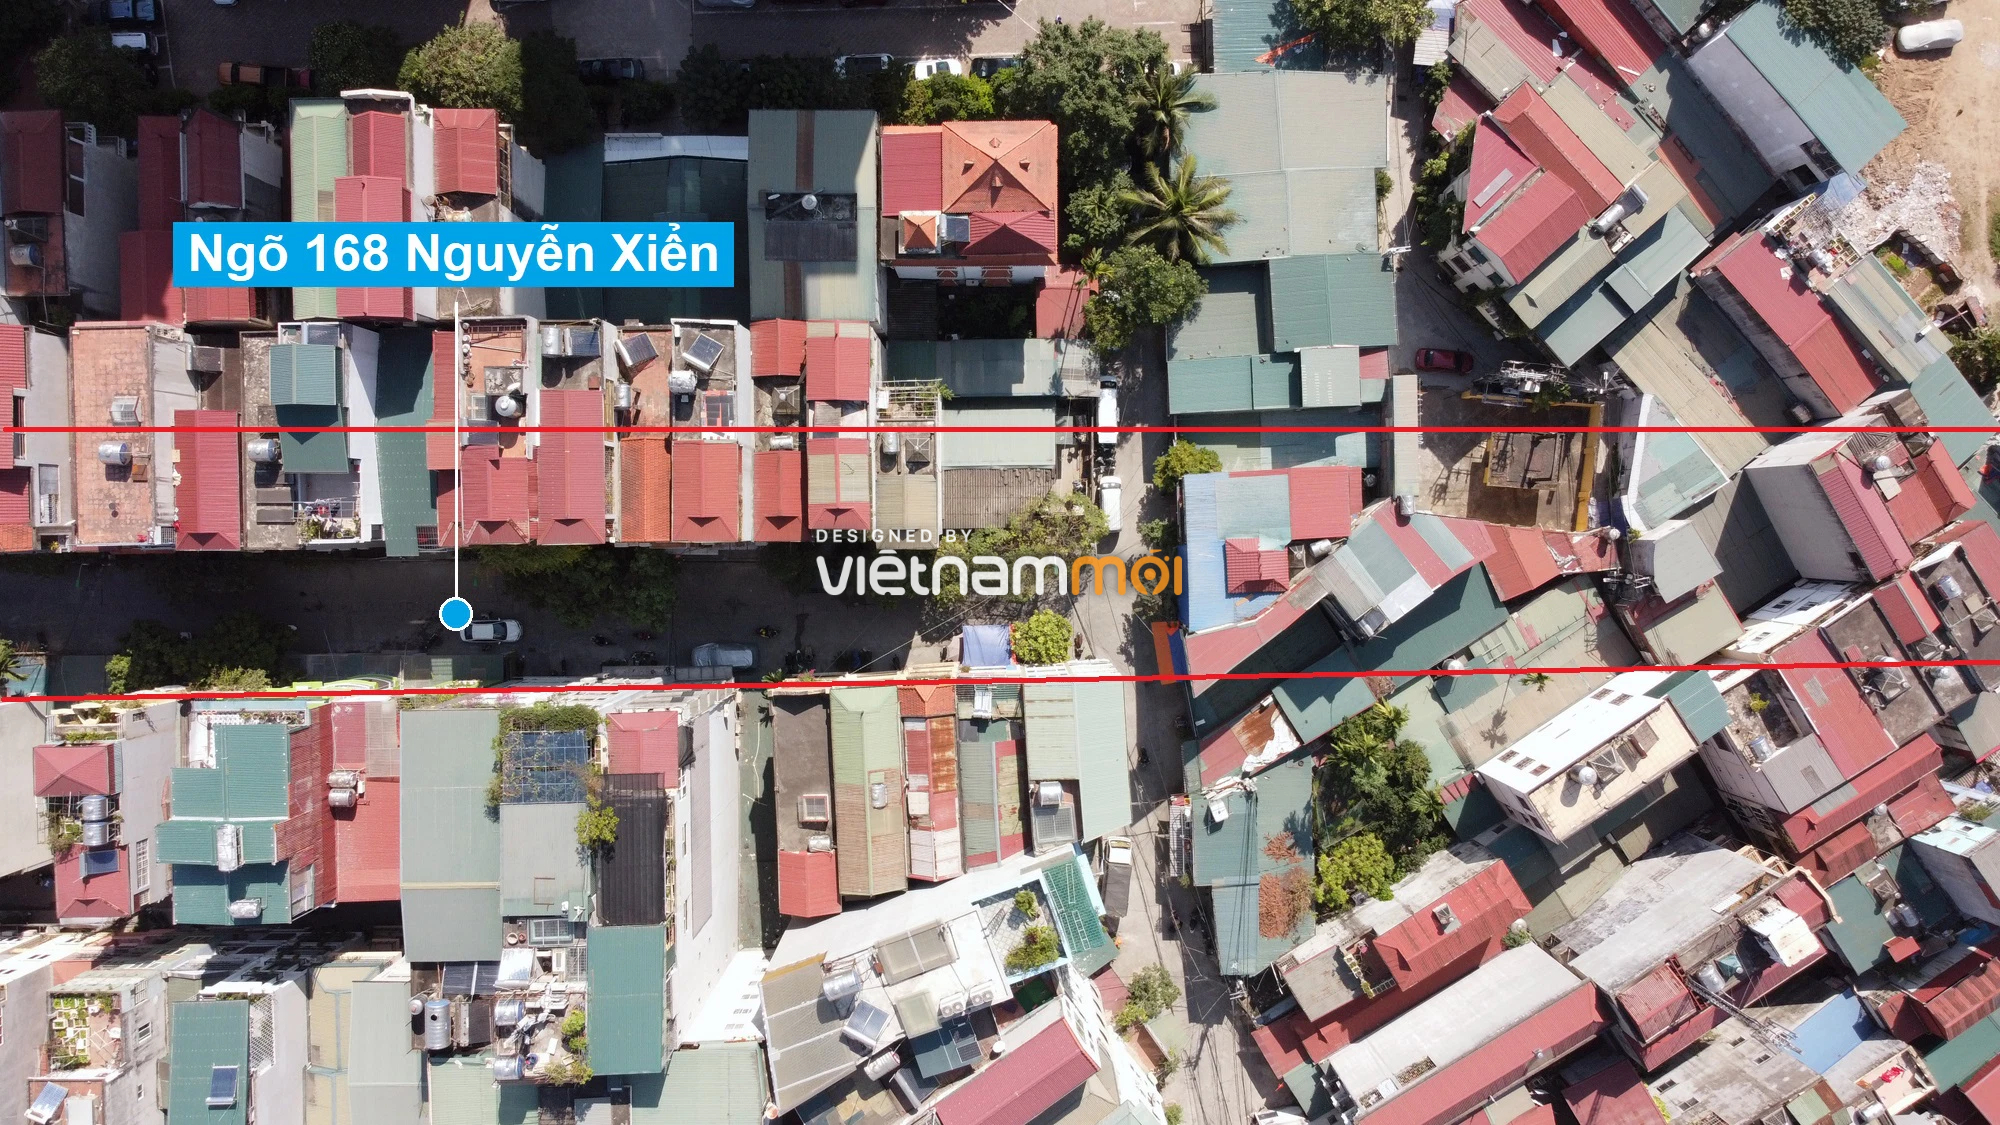 Những khu đất sắp thu hồi để mở đường ở quận Thanh Xuân, Hà Nội (phần 2) - Ảnh 7.